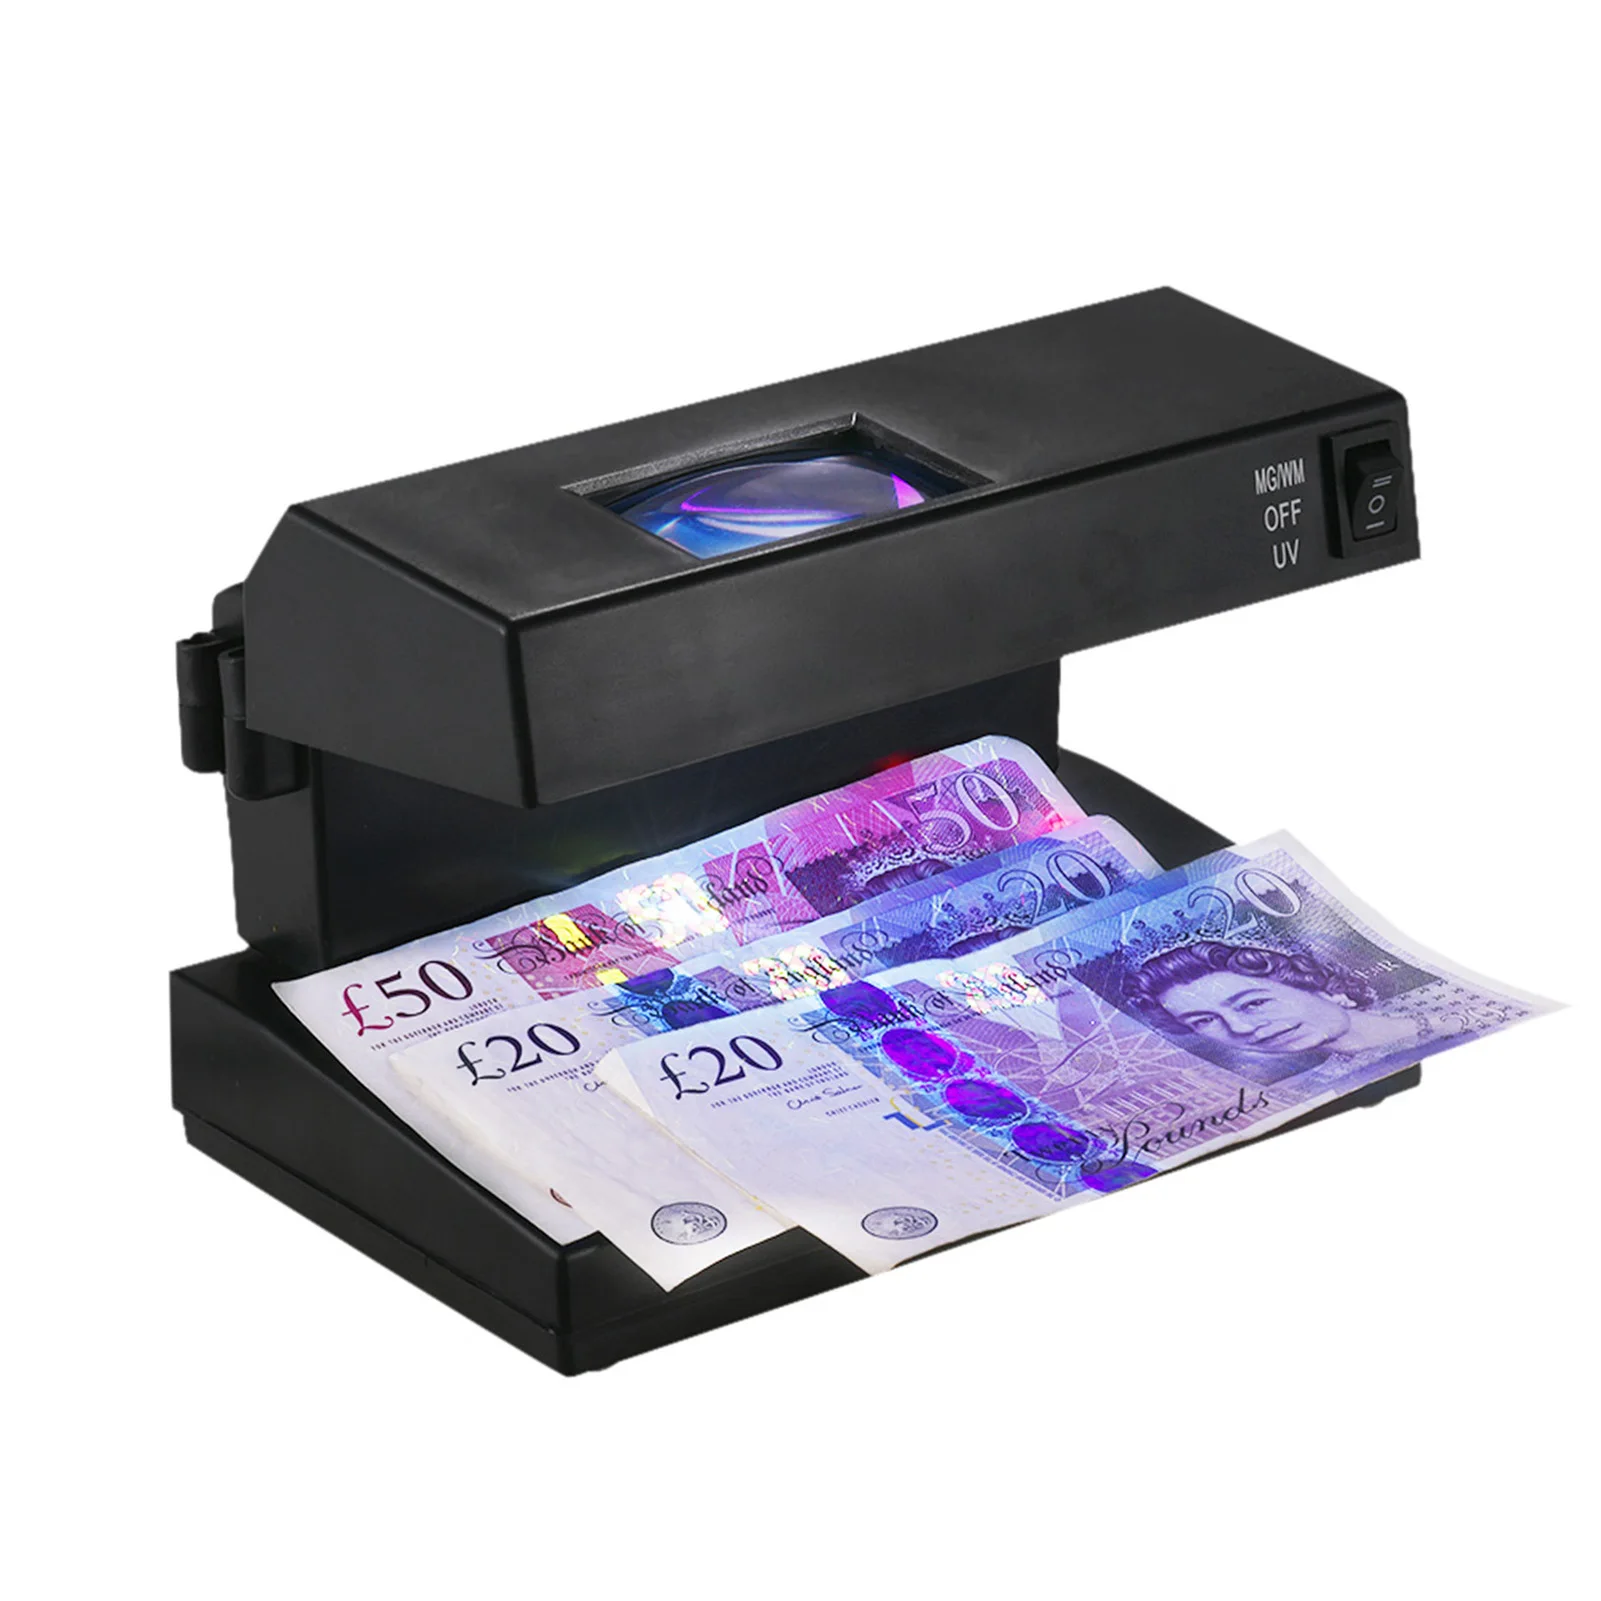 Přenosné ploše padělek návrh zákonu falešná lístek detektor hotové peníze valuta banknotes checker stroj ultrafialové záření UV lupa kované